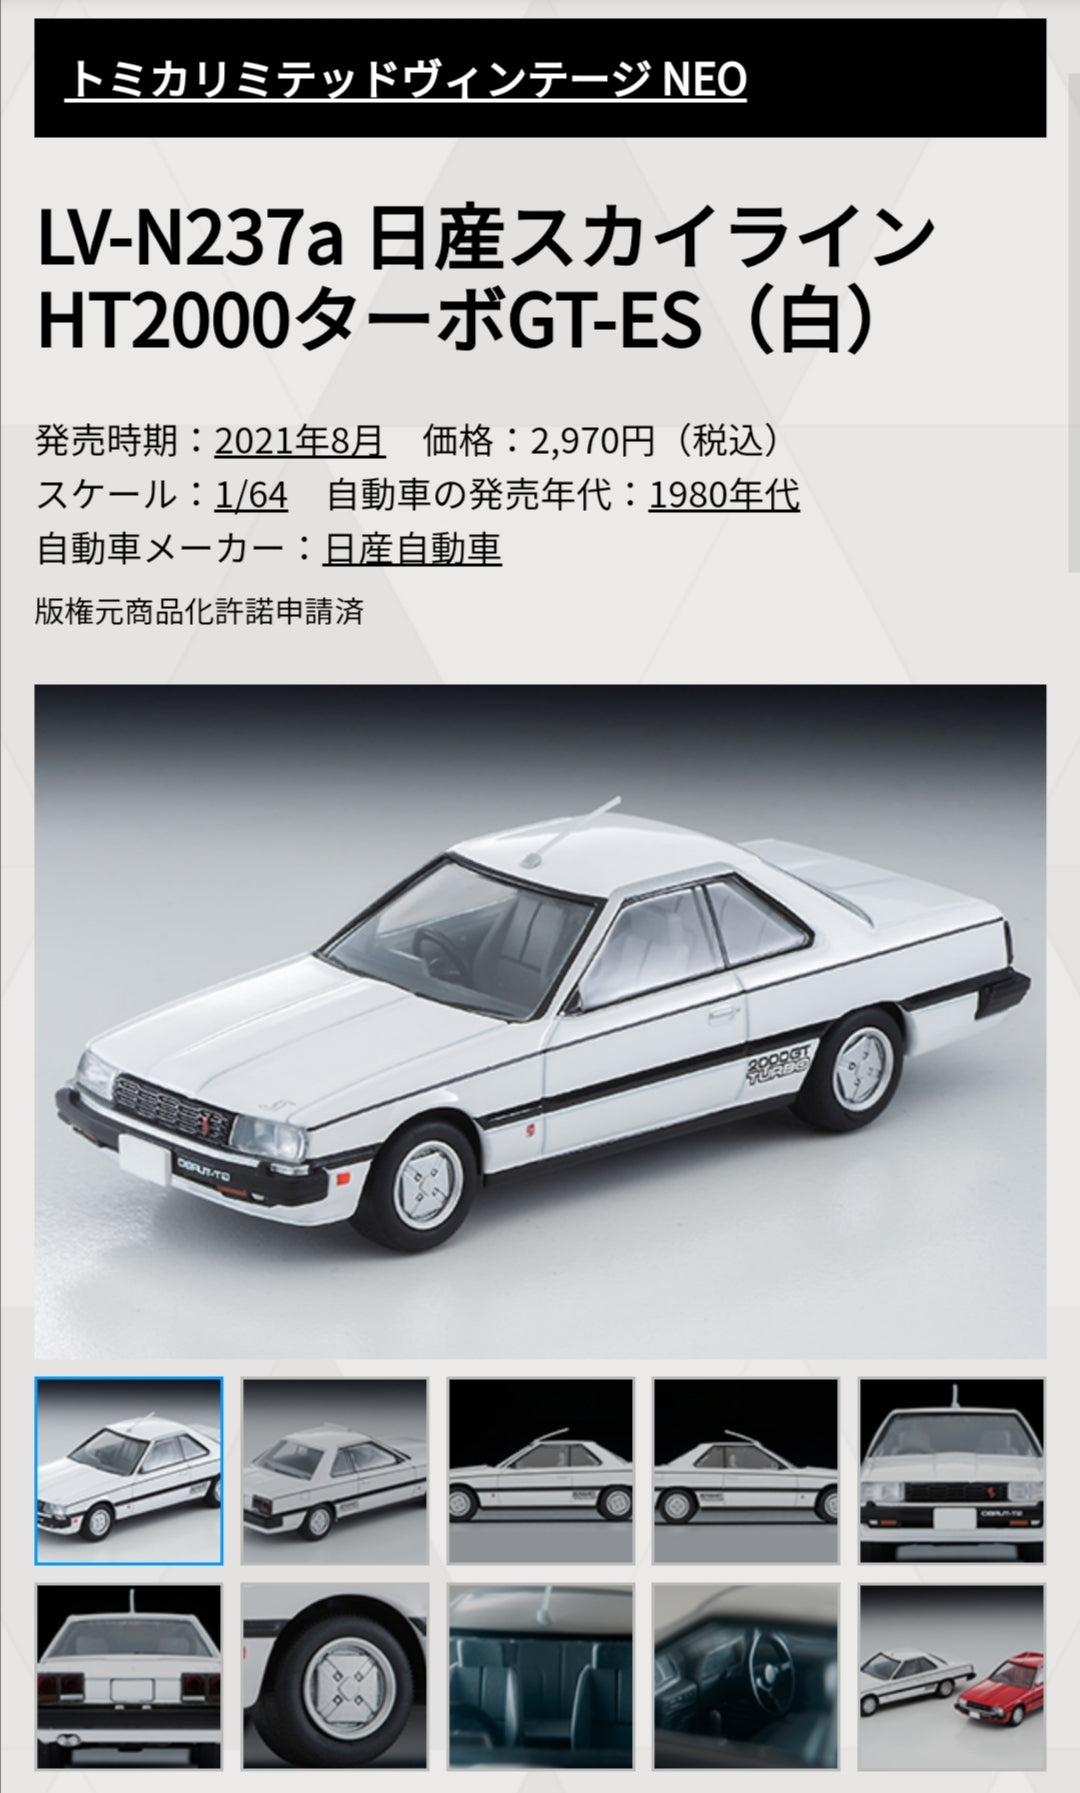 Tomica Limited Vintage LV-N237a Soul Vol.7 Nissan Skyline 2000 Turbo GT-ES (White)